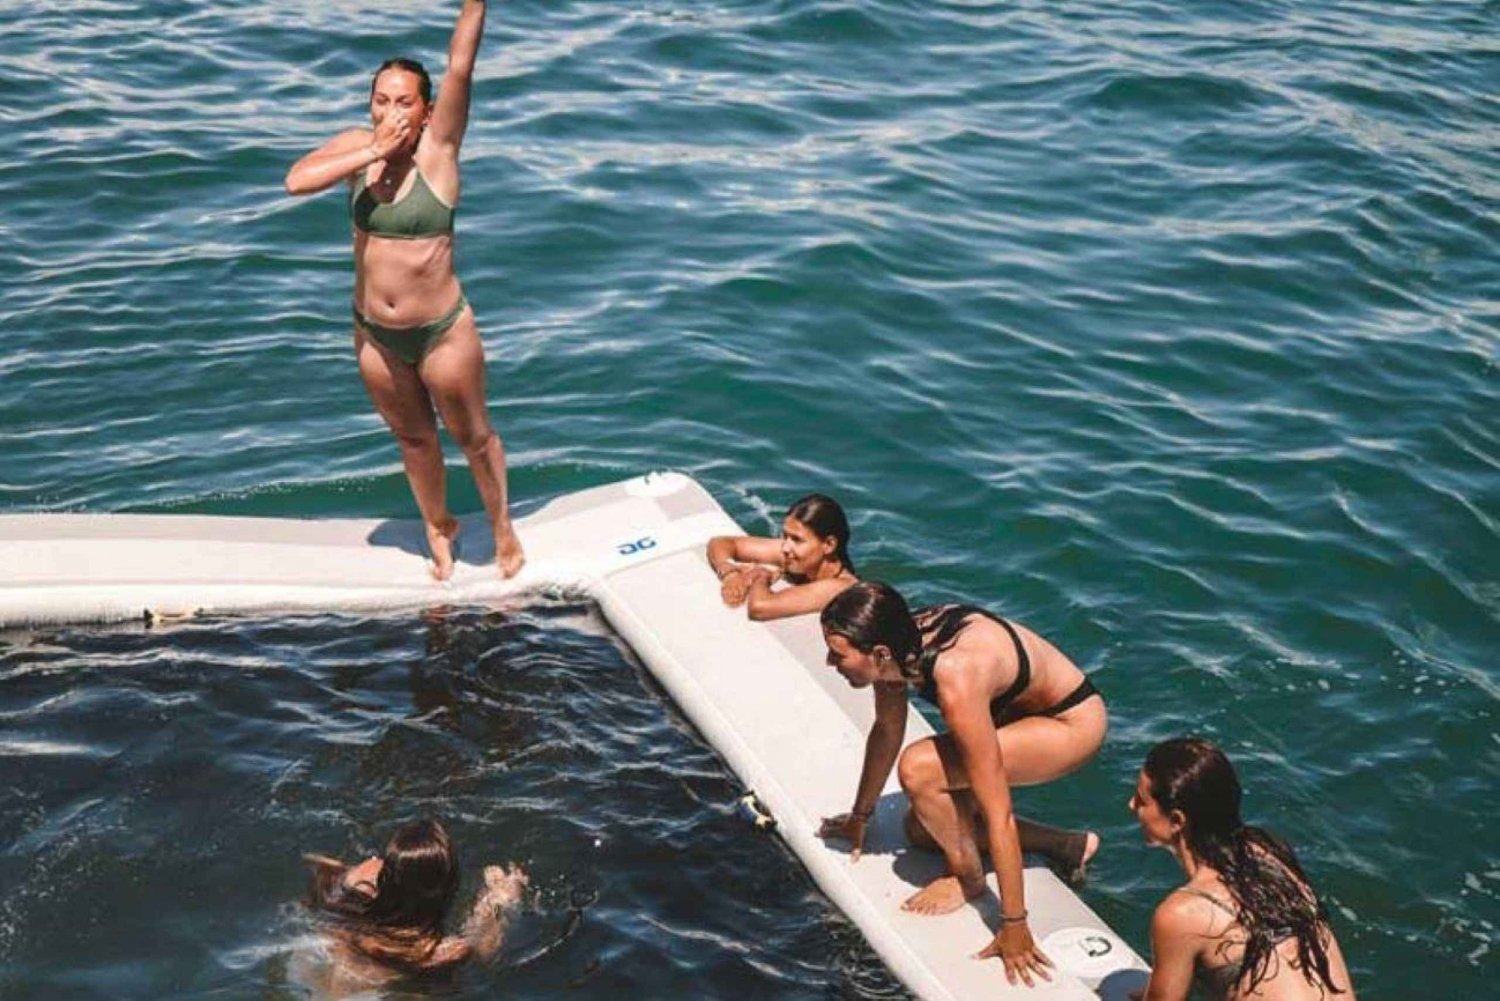 Le Grau-du-Roi: Pool Slide Party on a Catamaran